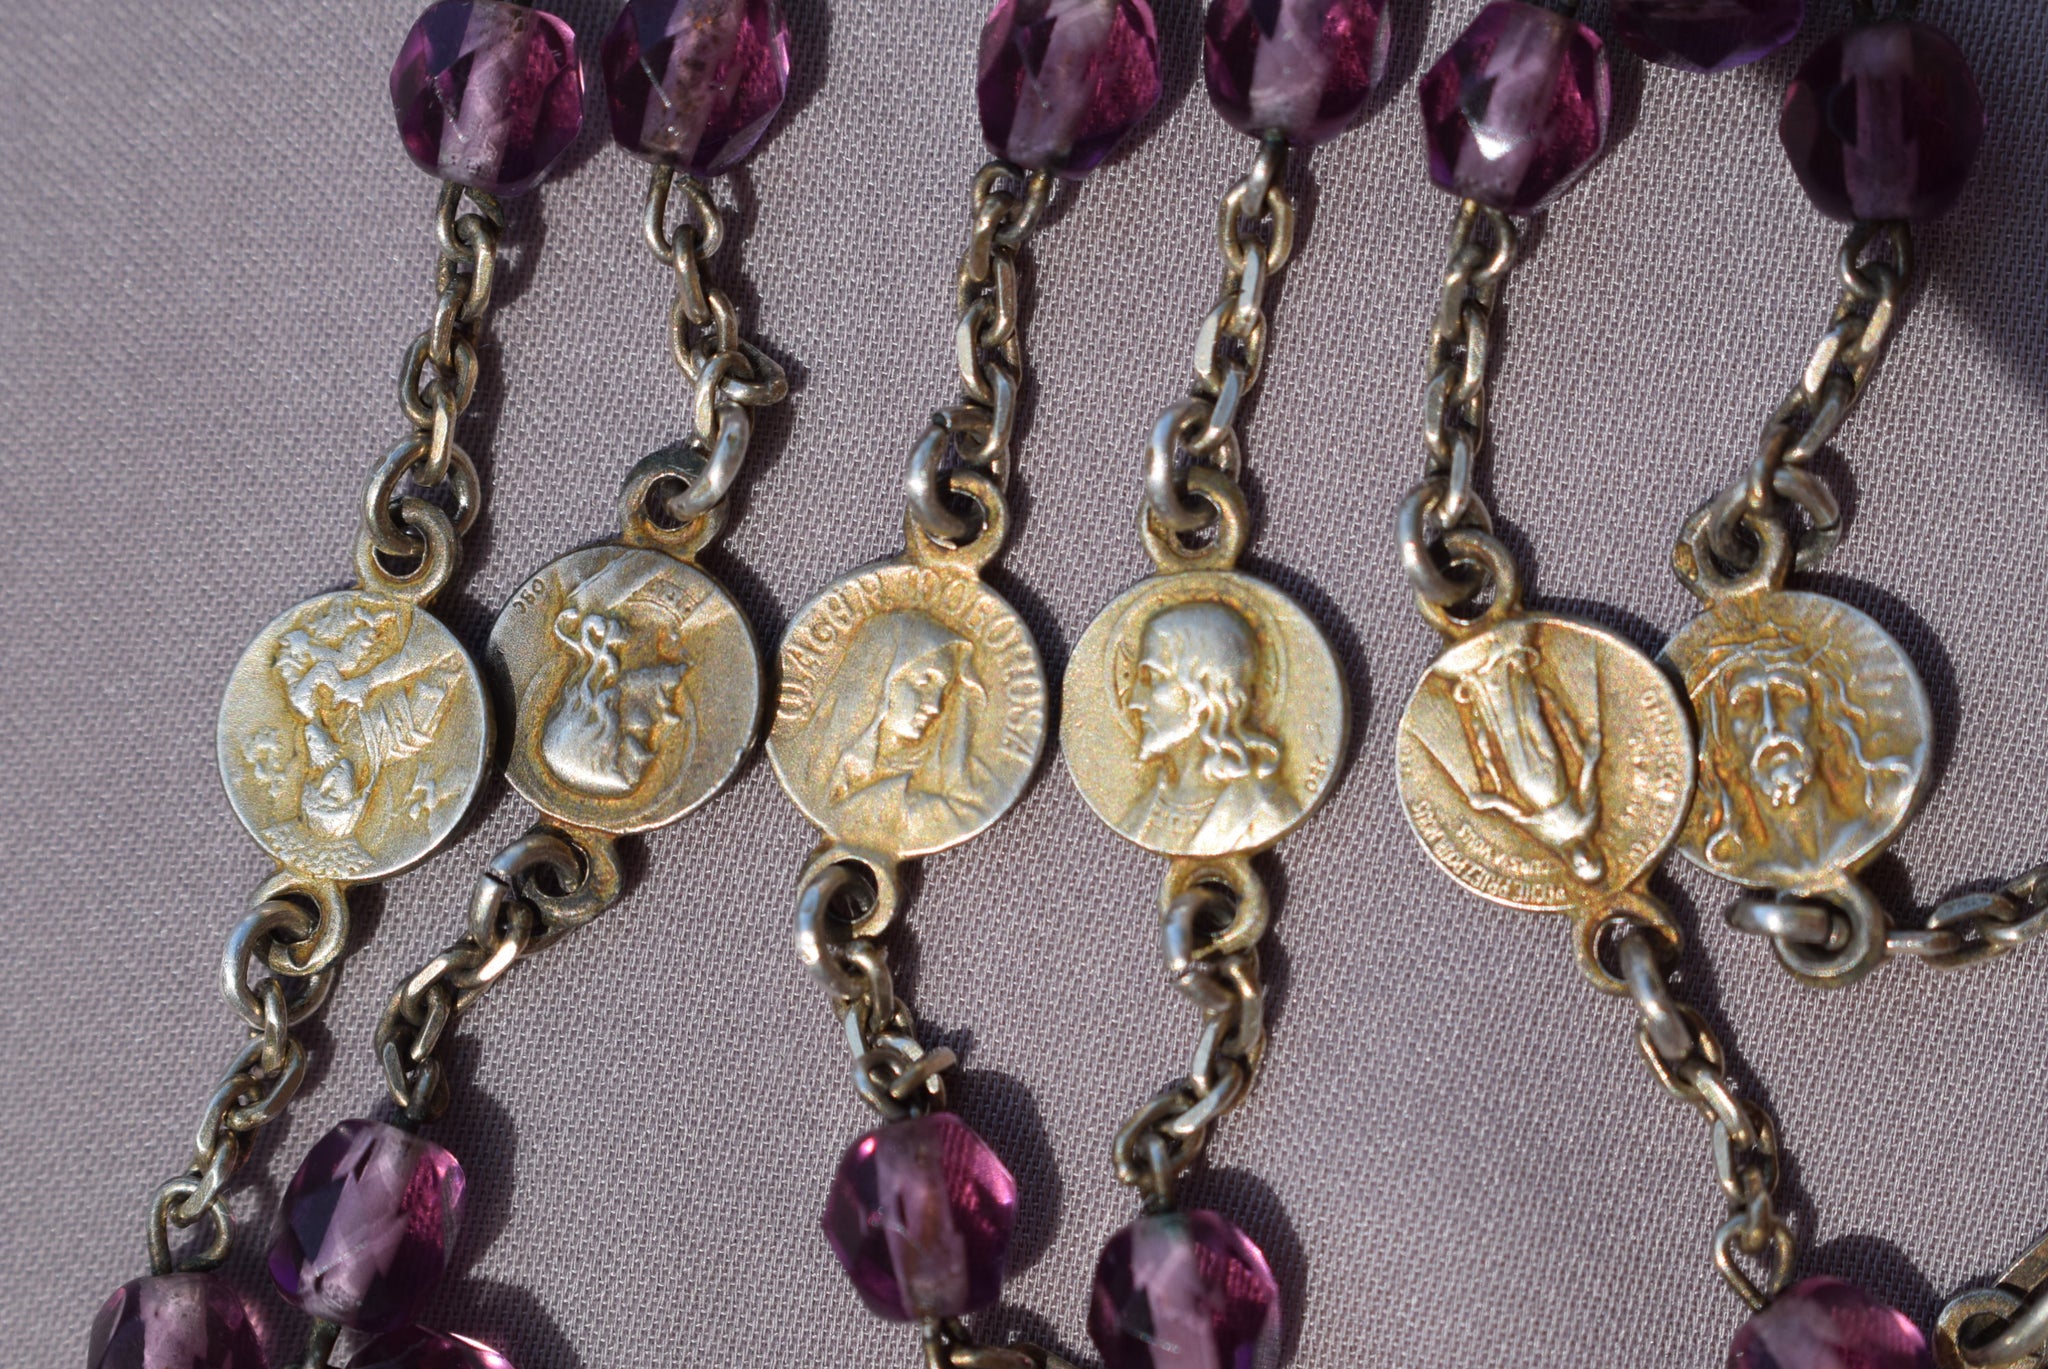 Art Nouveau Purple Rosary - Charmantiques